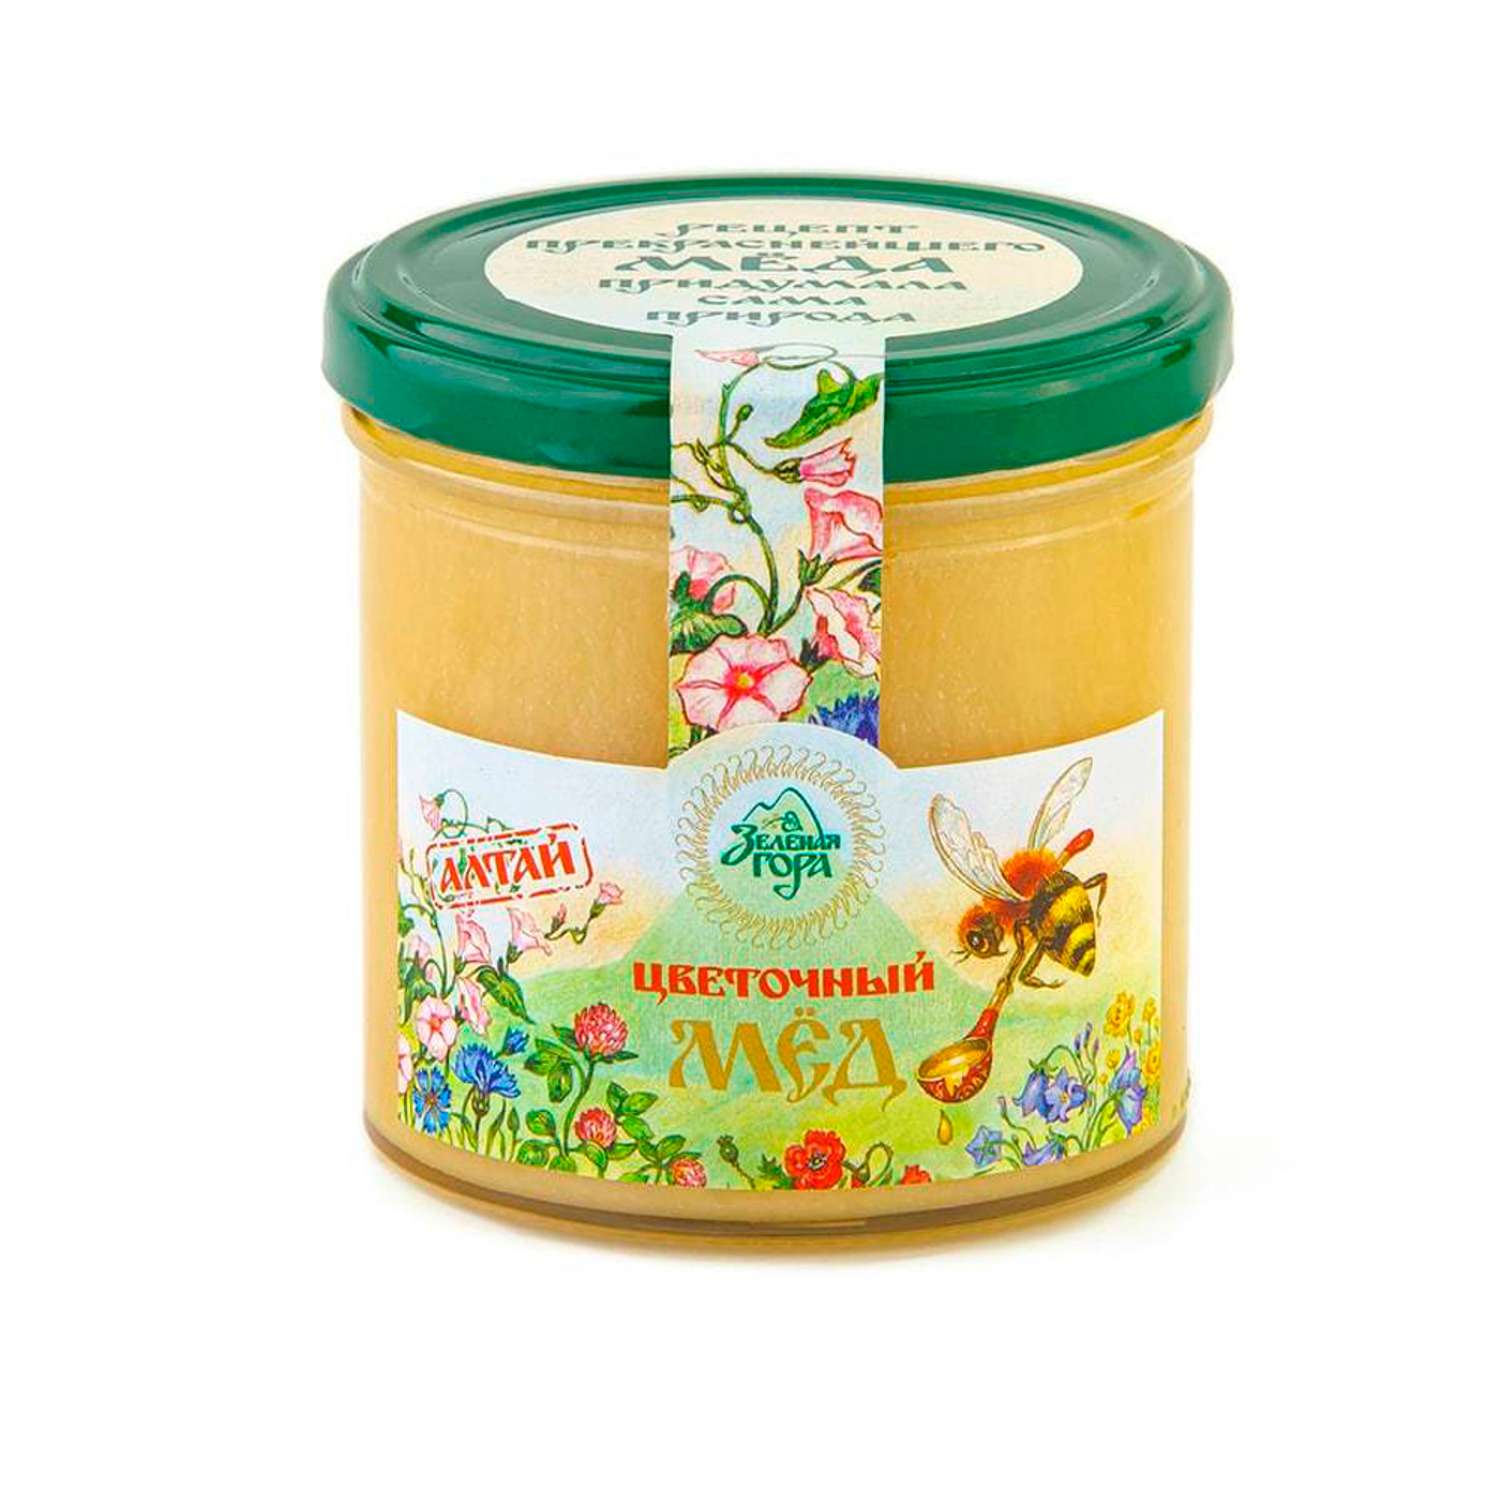 Мед Зеленая гора пчелиный натуральный Цветочный 400 мл - фото 1